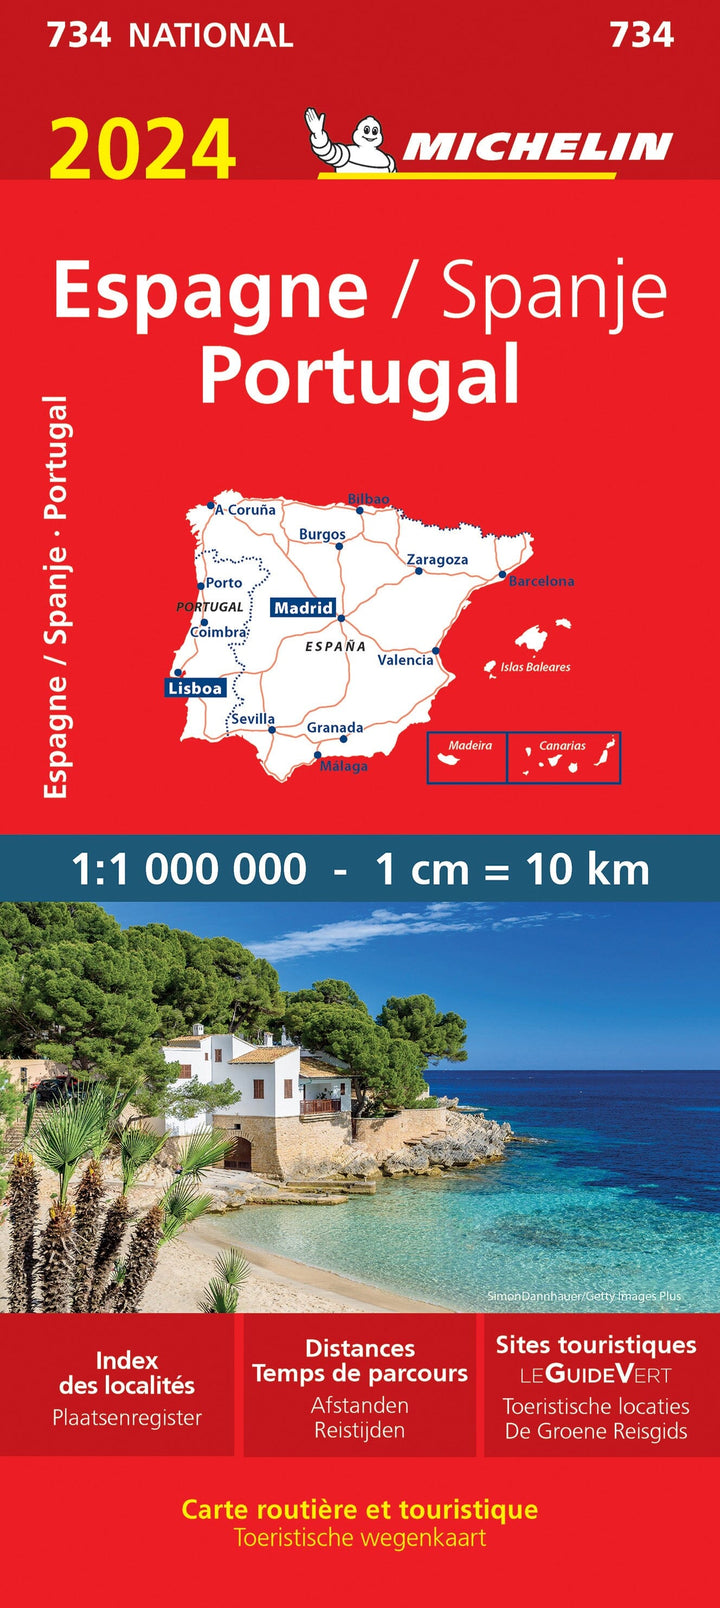 Carte routière n° 734 - Espagne, Portugal 2024 | Michelin carte pliée Michelin 